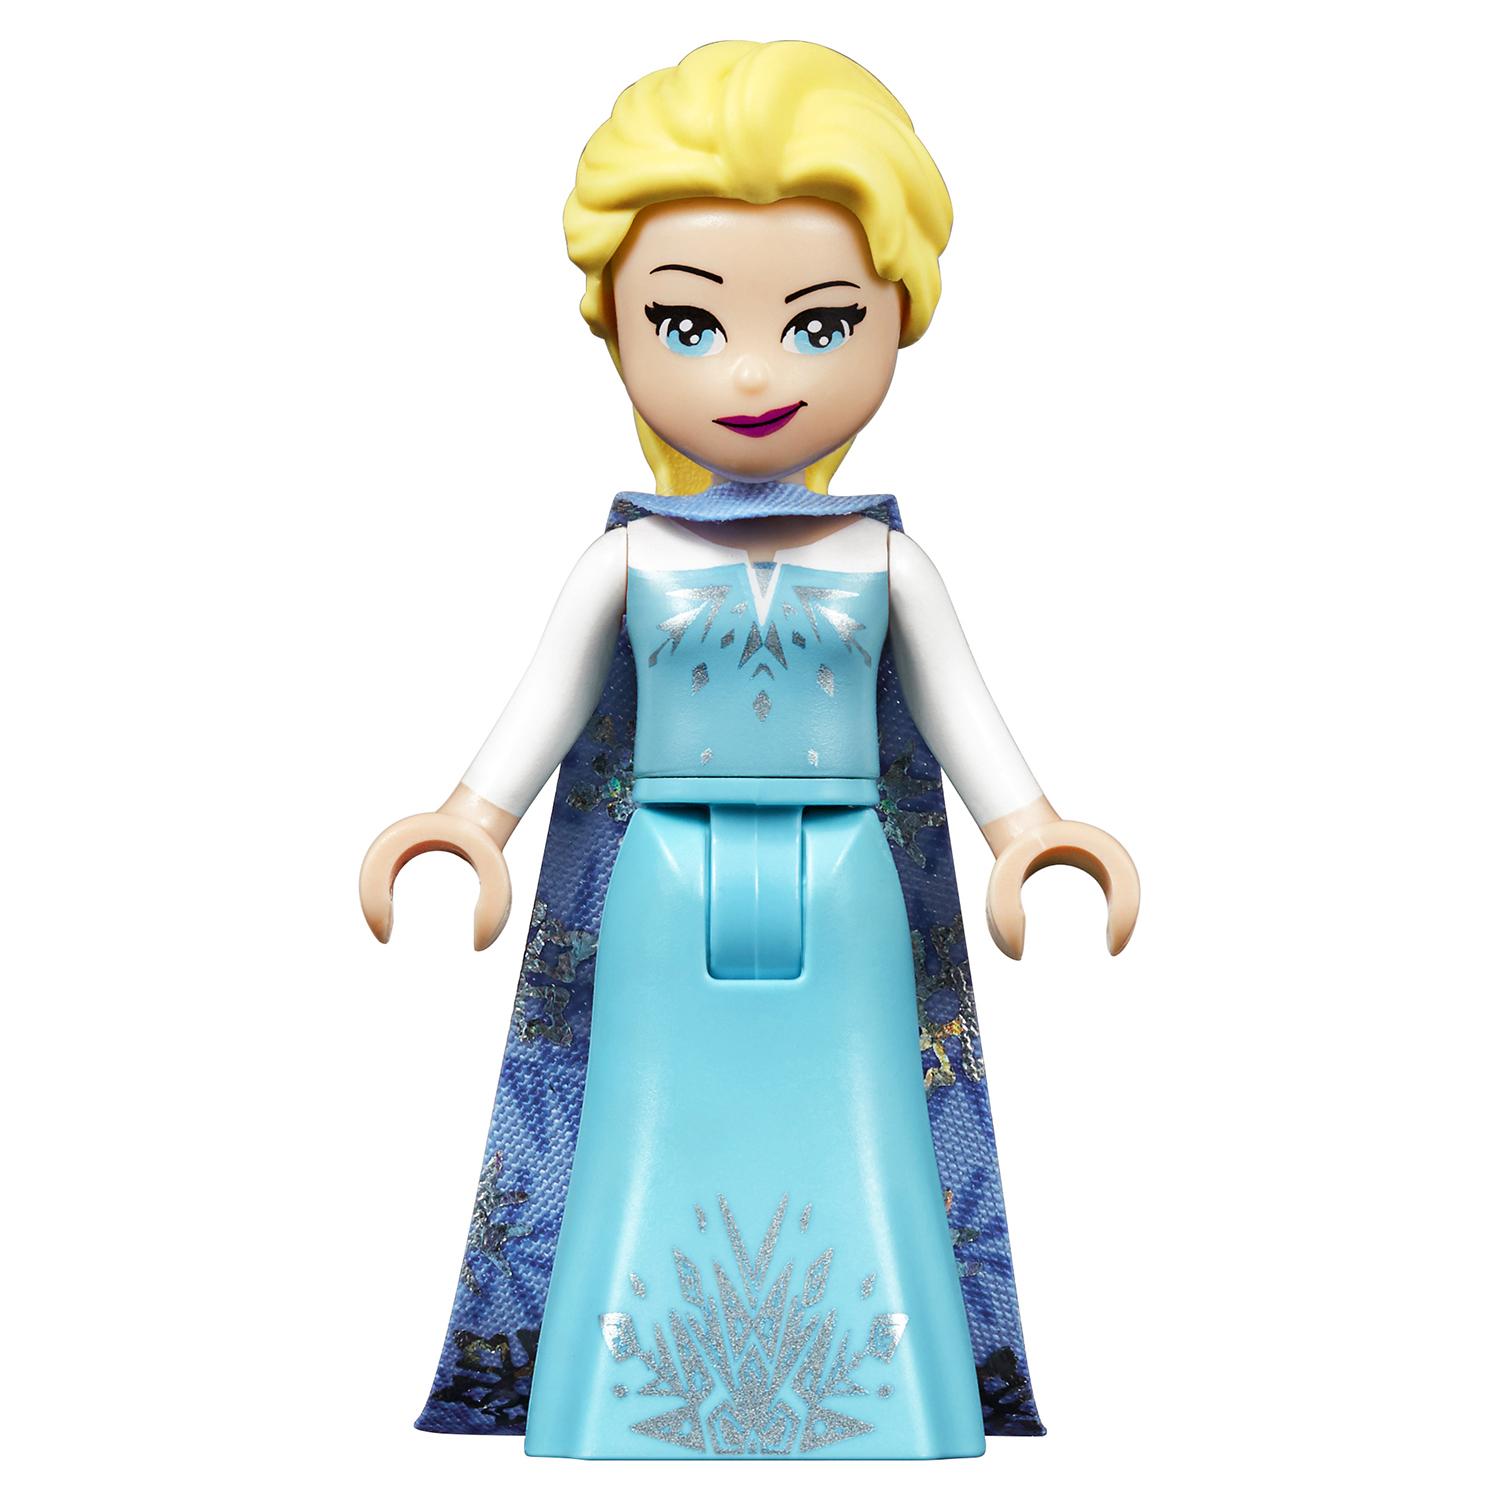 Lego Disney Princess 41155 Приключения Эльзы на рынке